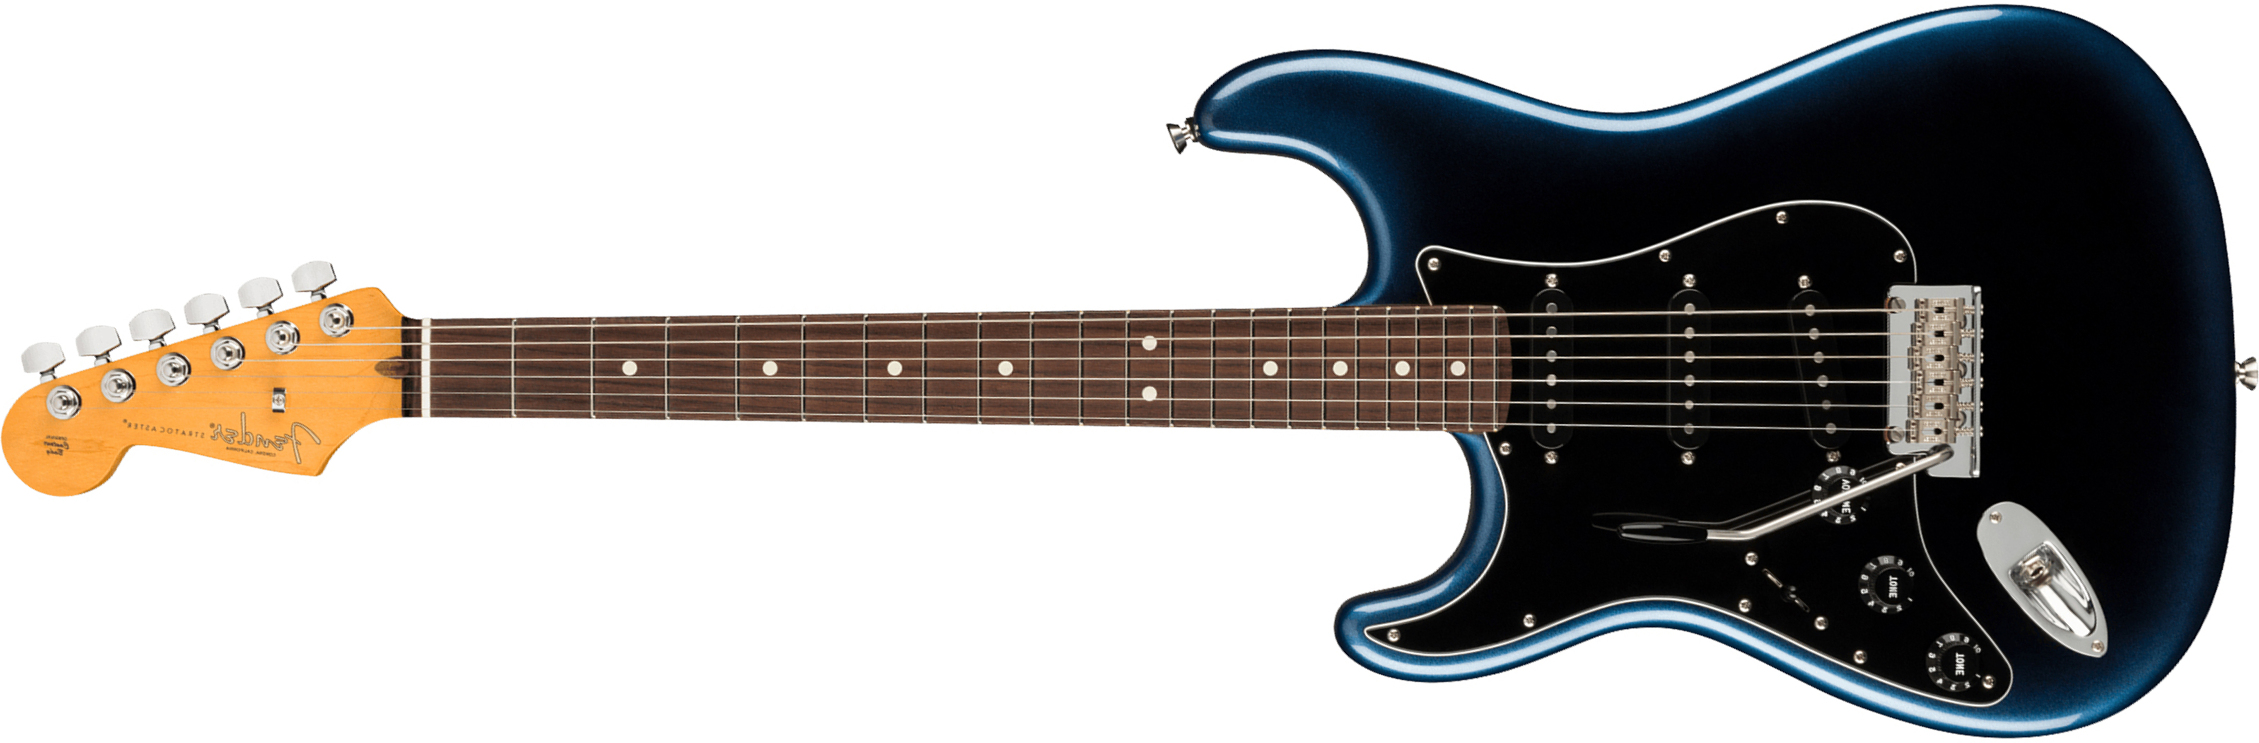 Fender Strat American Professional Ii Lh Gaucher Usa Rw - Dark Night - Guitarra electrica para zurdos - Main picture